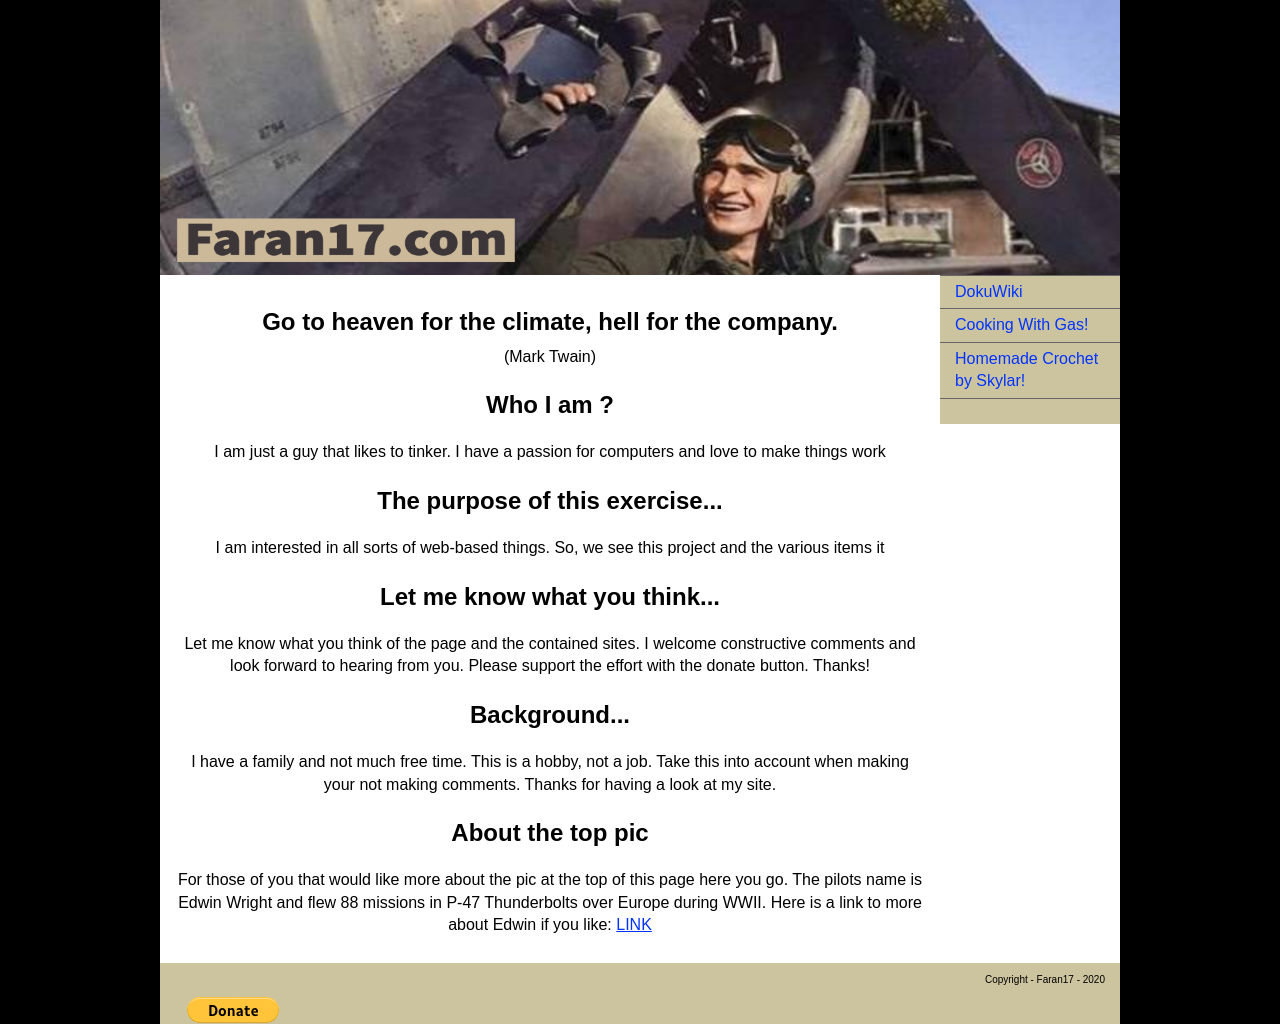 faran17.com